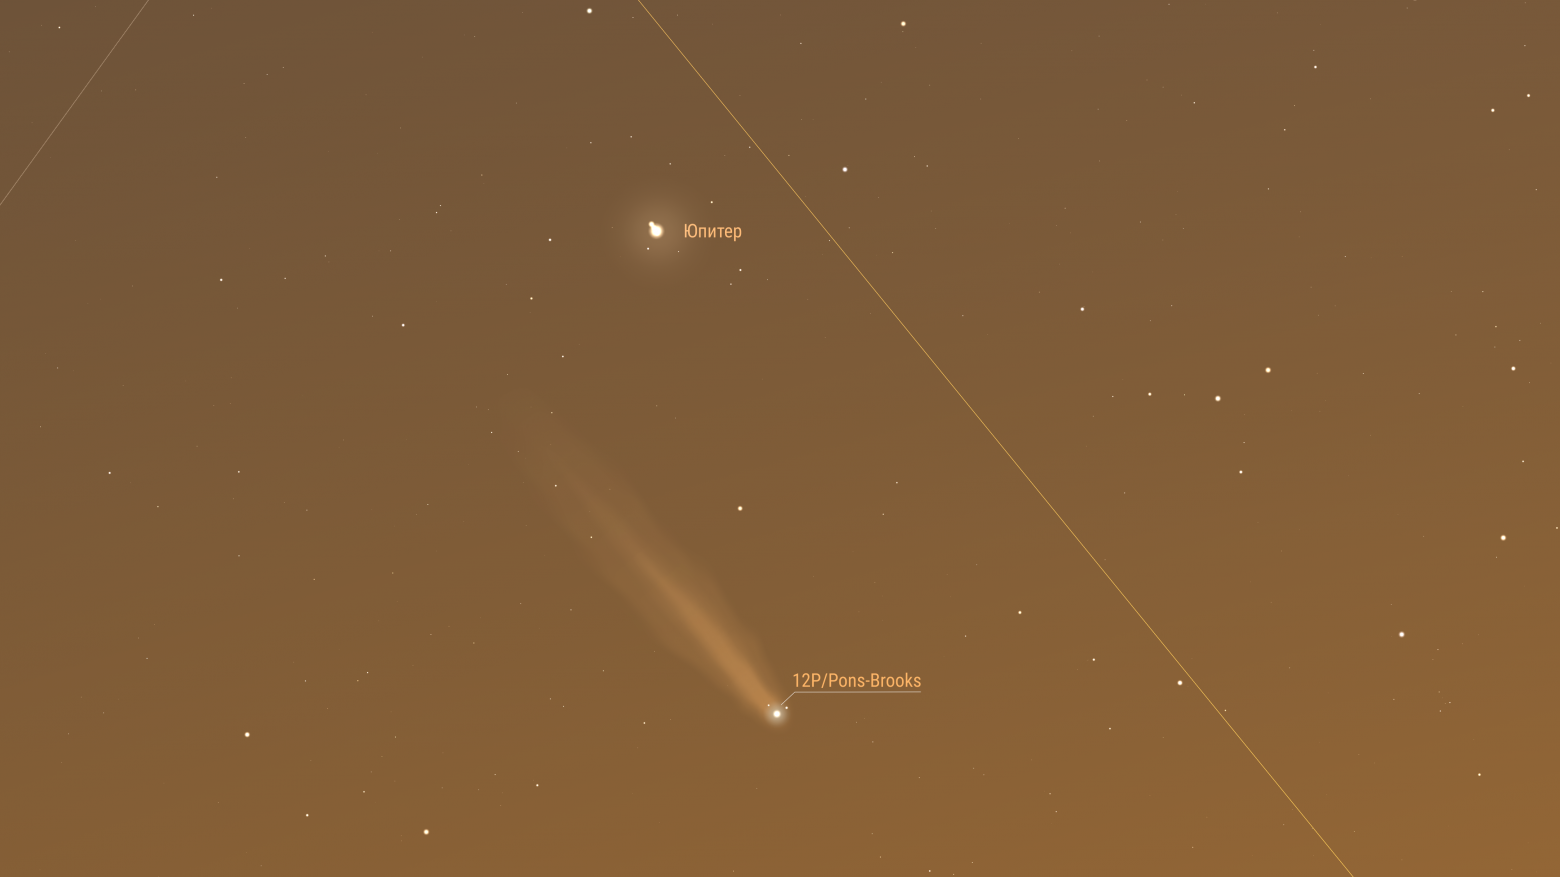 Комета продолжает движение по созвездию Овна. Предполагаемая звездная величина 3,78m. Элонгация 23 градуса. Комета достигла наибольшего сближения с Юпитером